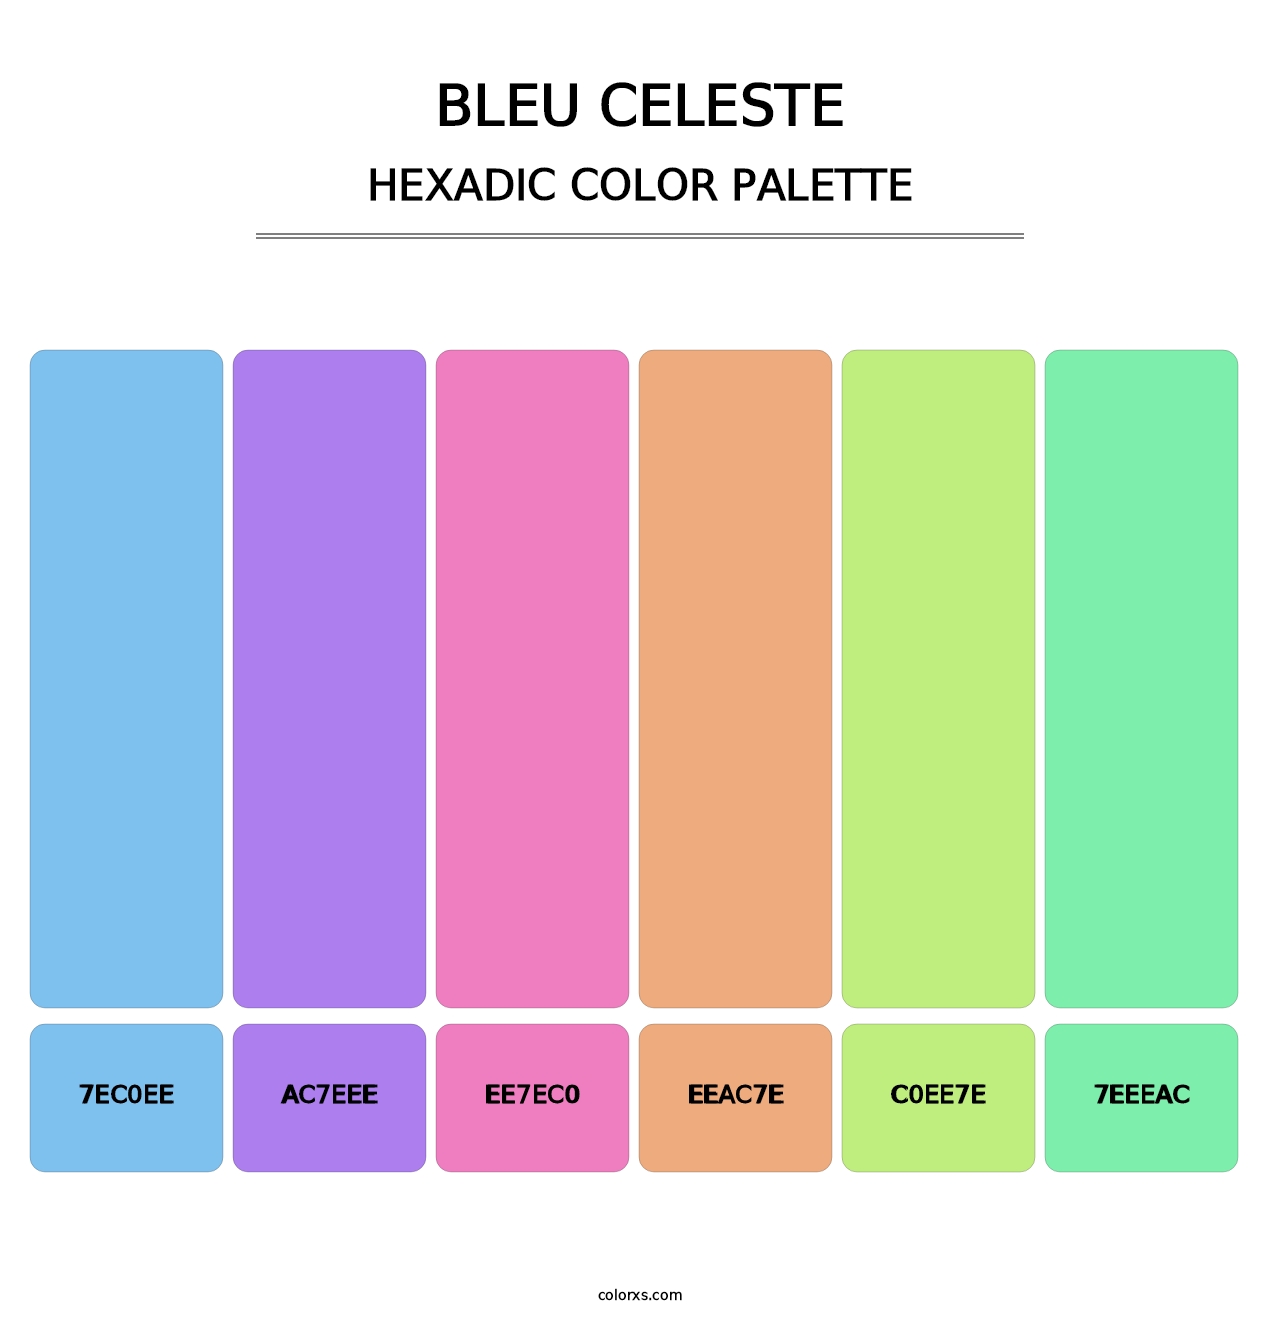 Bleu Celeste - Hexadic Color Palette